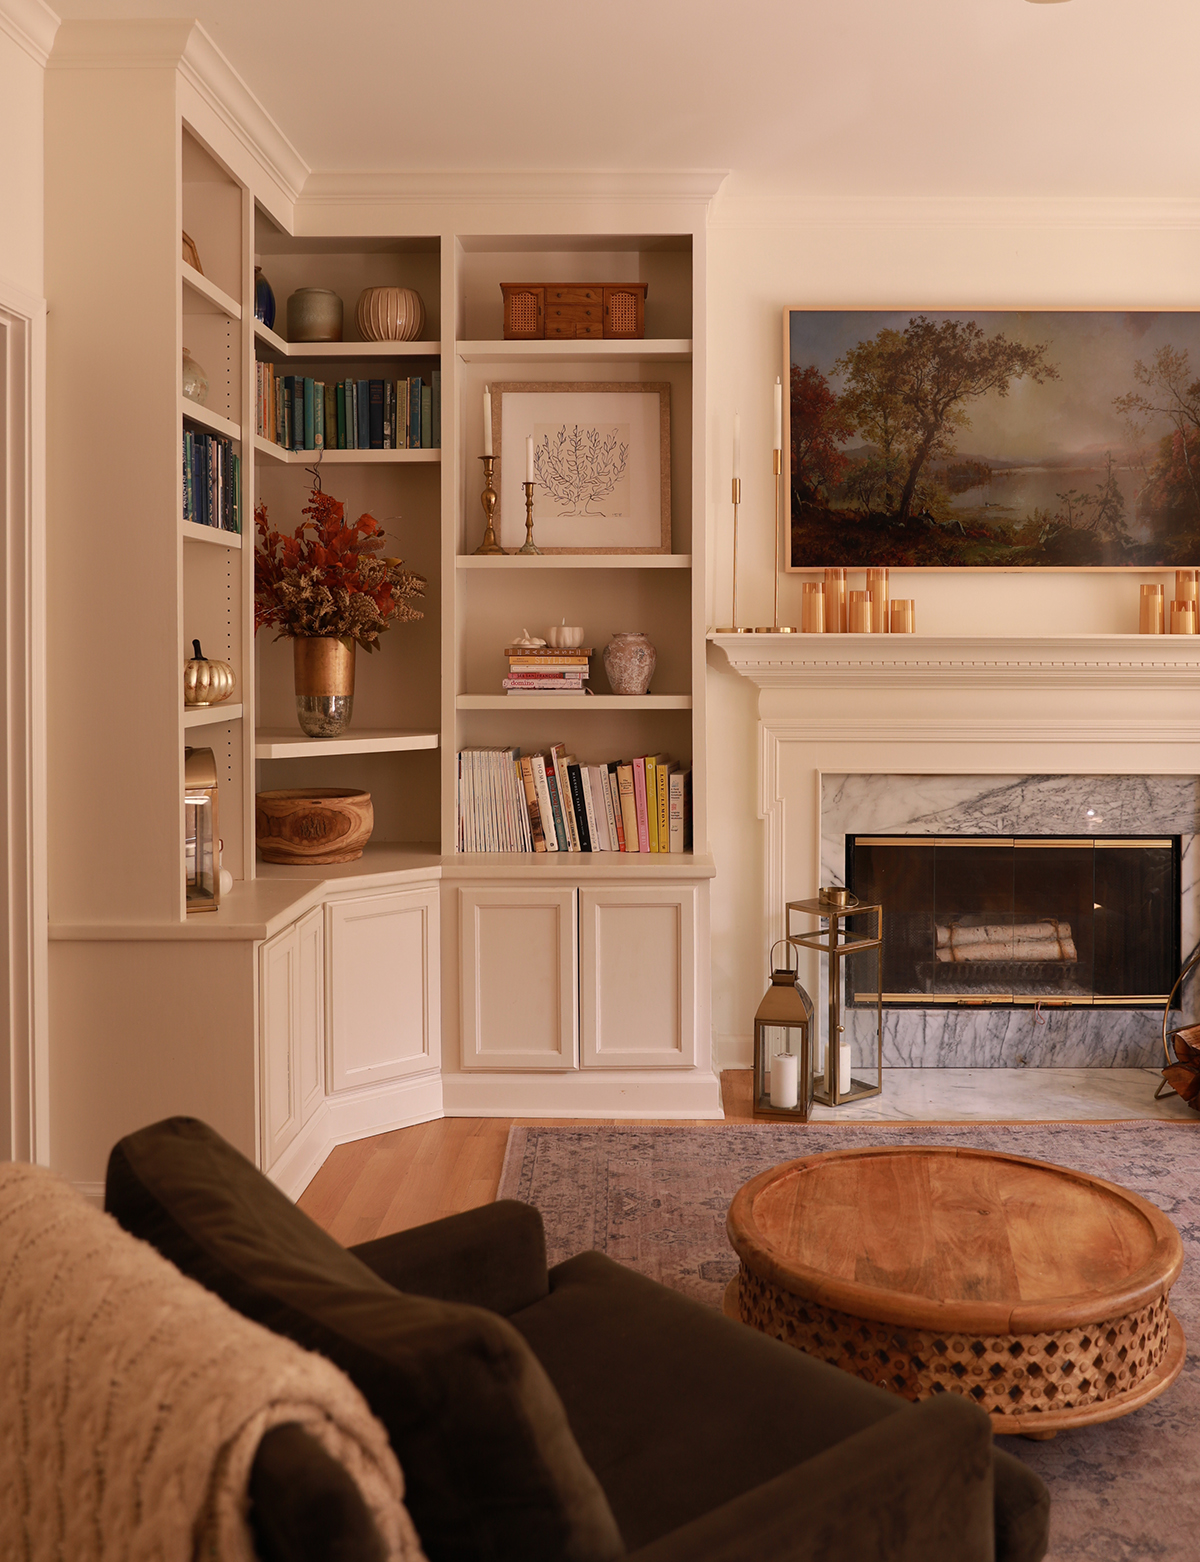 living room bookshelves - frametv art